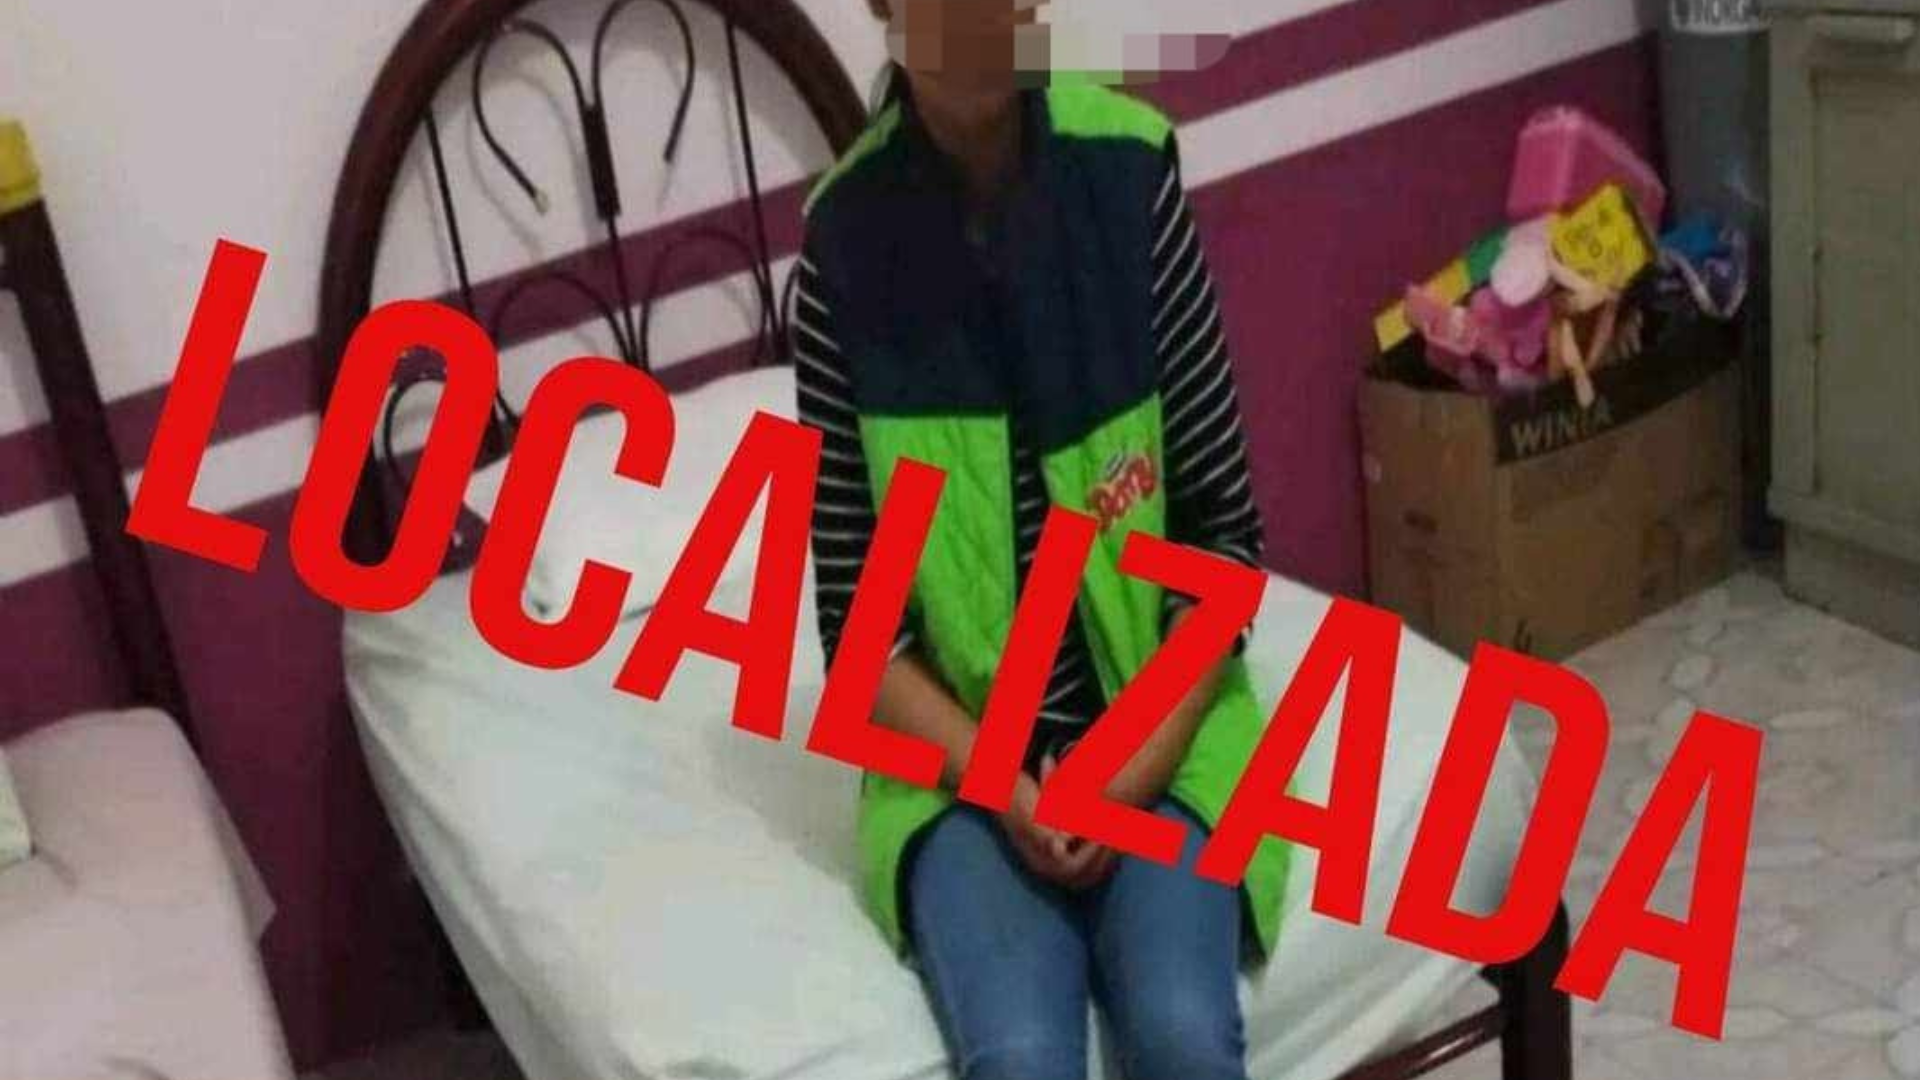 Joseline Menor De 15 Años Desaparecida En Edomex Apareció En Veracruz La Jornada Estado De 6859